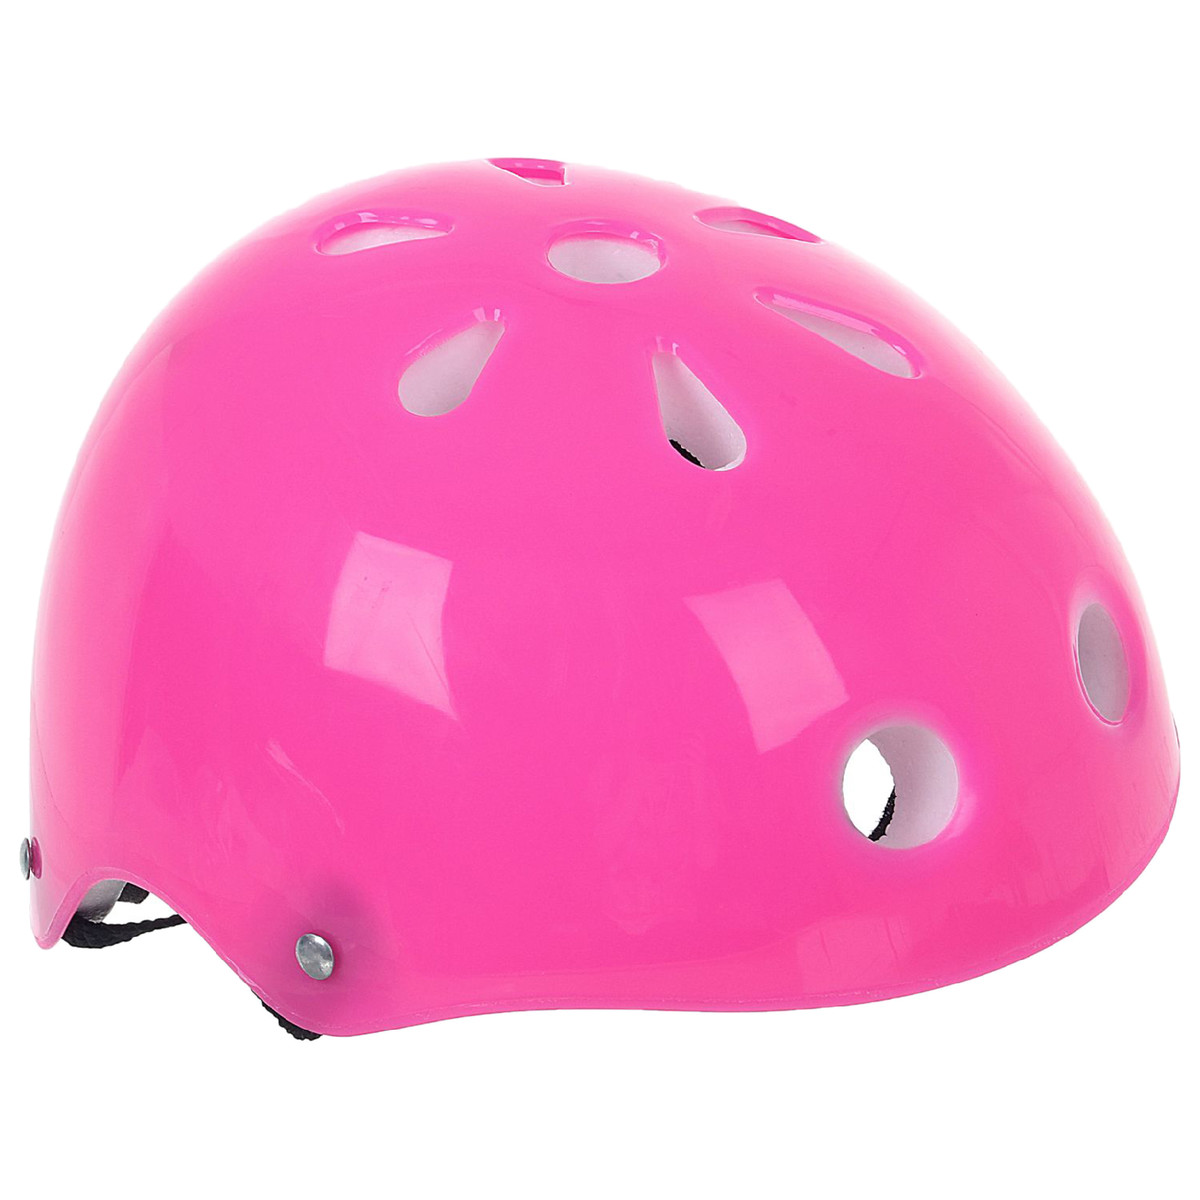 Шлем защитный детский onlytop ot-s507, обхват 55 см, цвет розовый шлем шапка демисезонный для девочки orso bianco розовый